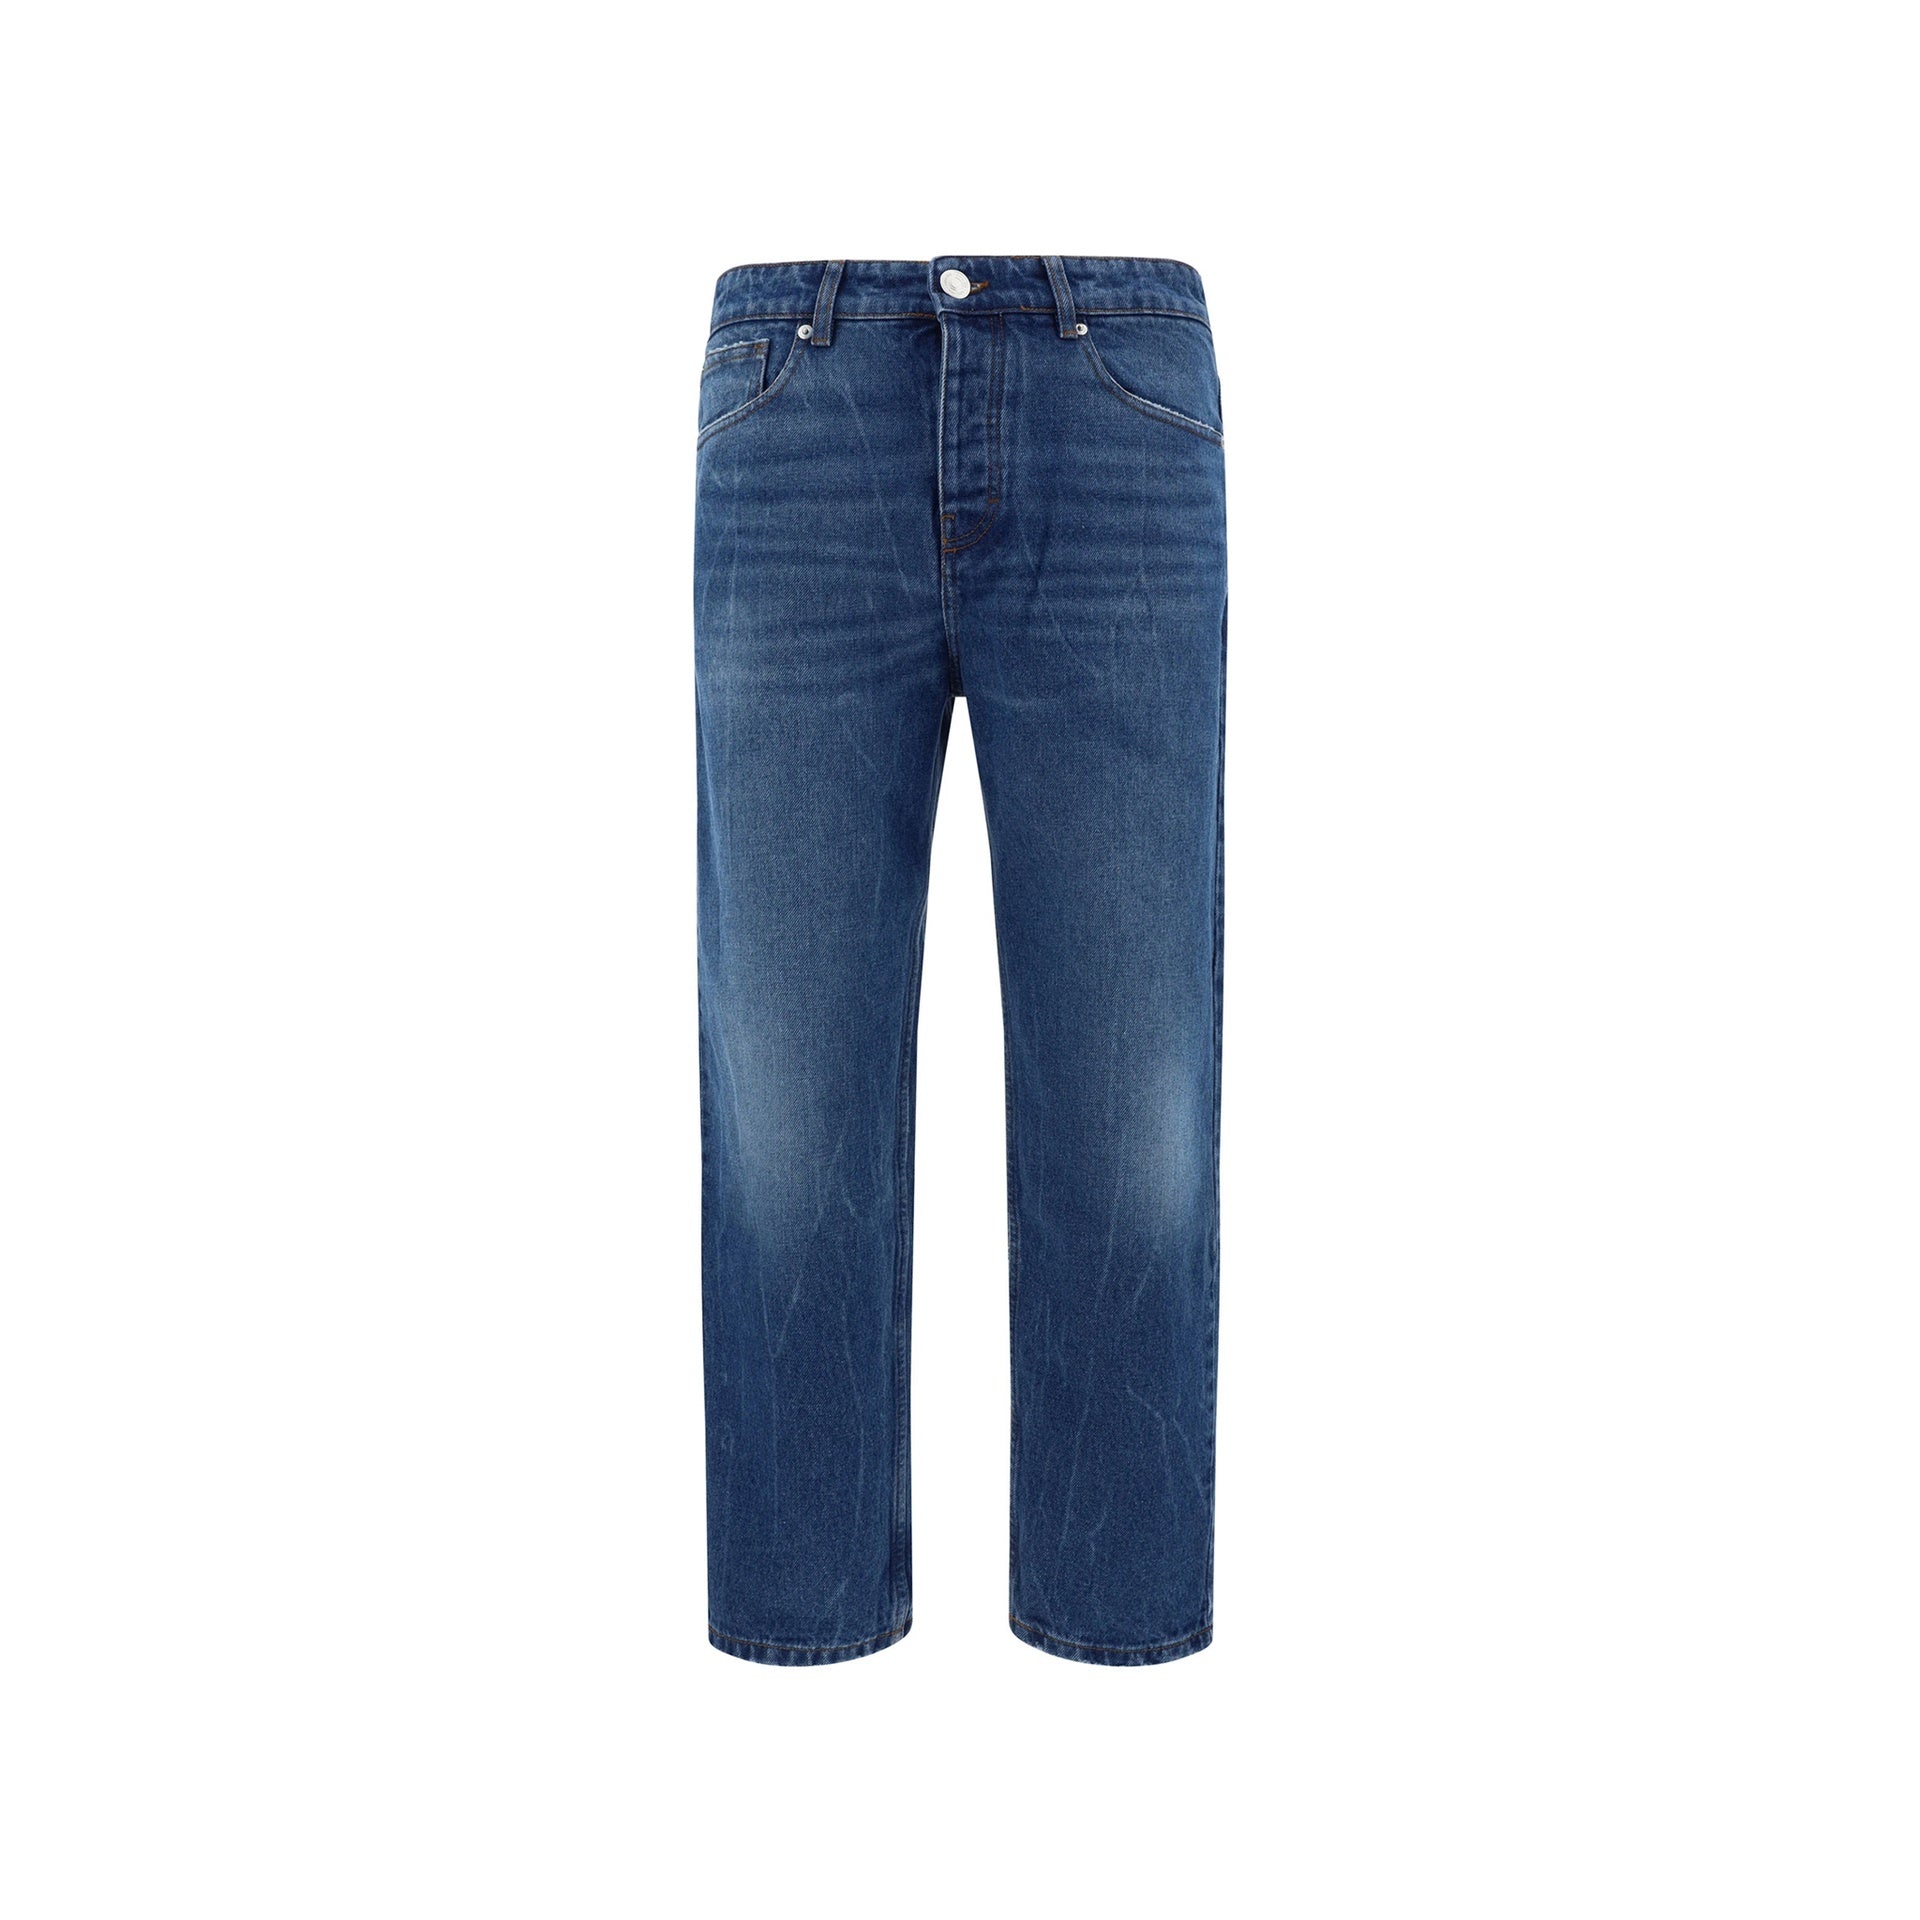 AMI-PARIS-OUTLET-SALE-Ami-Paris-Tapered-Fit-Jeans-Hosen-BLUE-33-ARCHIVE-COLLECTION.jpg